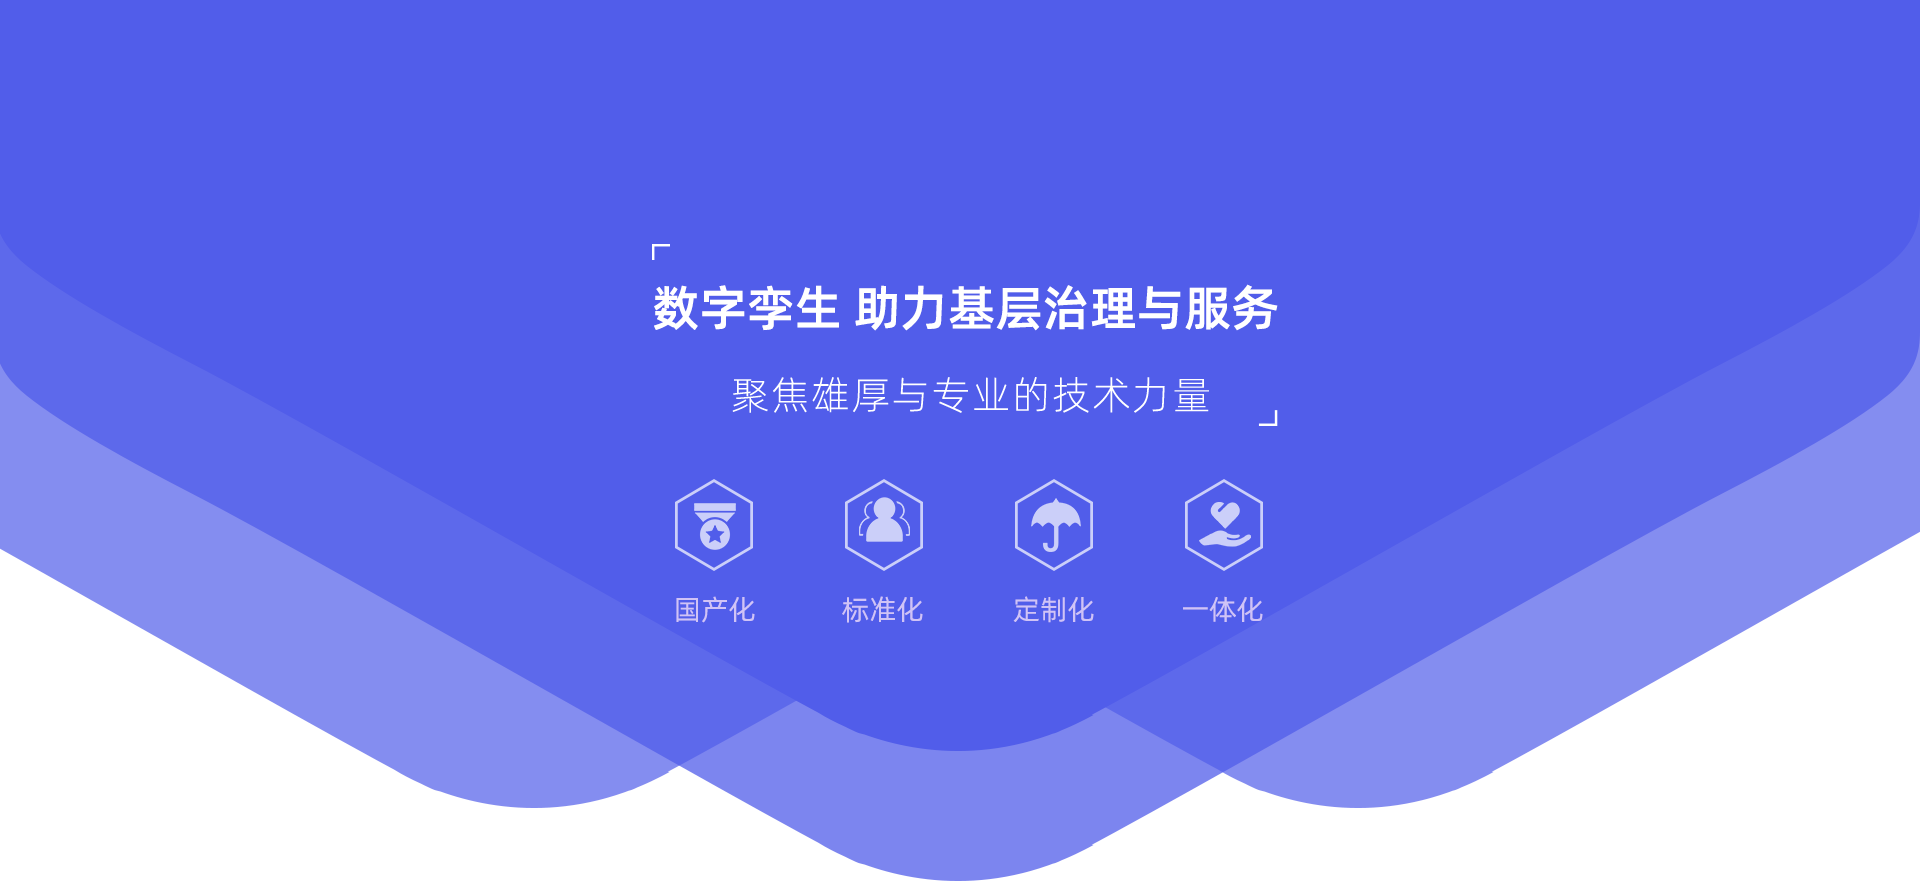 关于当前产品3199ceo下载·(中国)官方网站的成功案例等相关图片